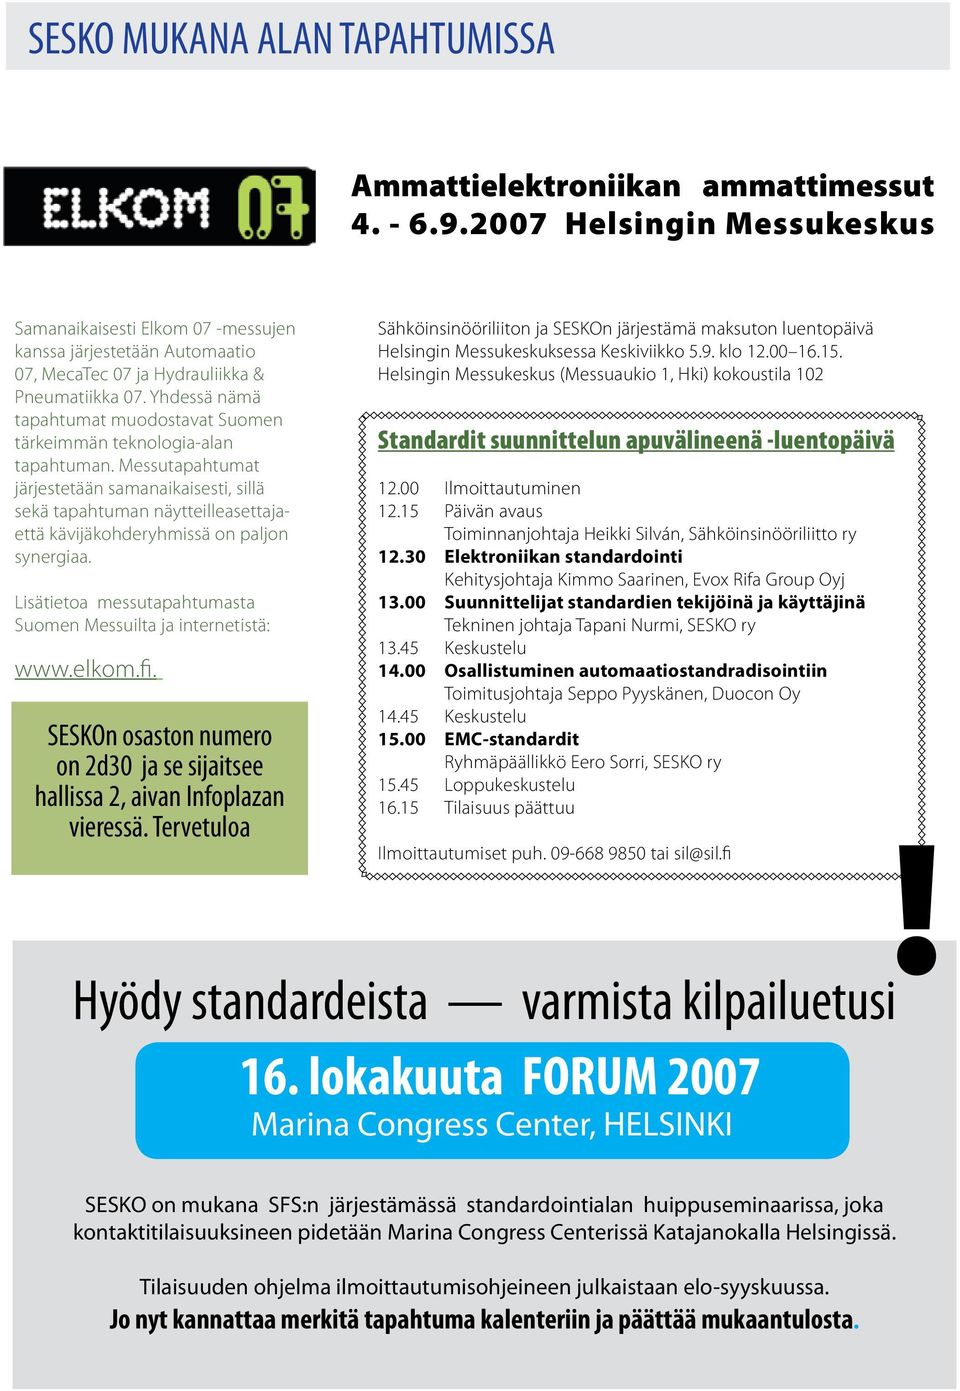 Yhdessä nämä tapahtumat muodostavat Suomen tärkeimmän teknologia-alan tapahtuman.